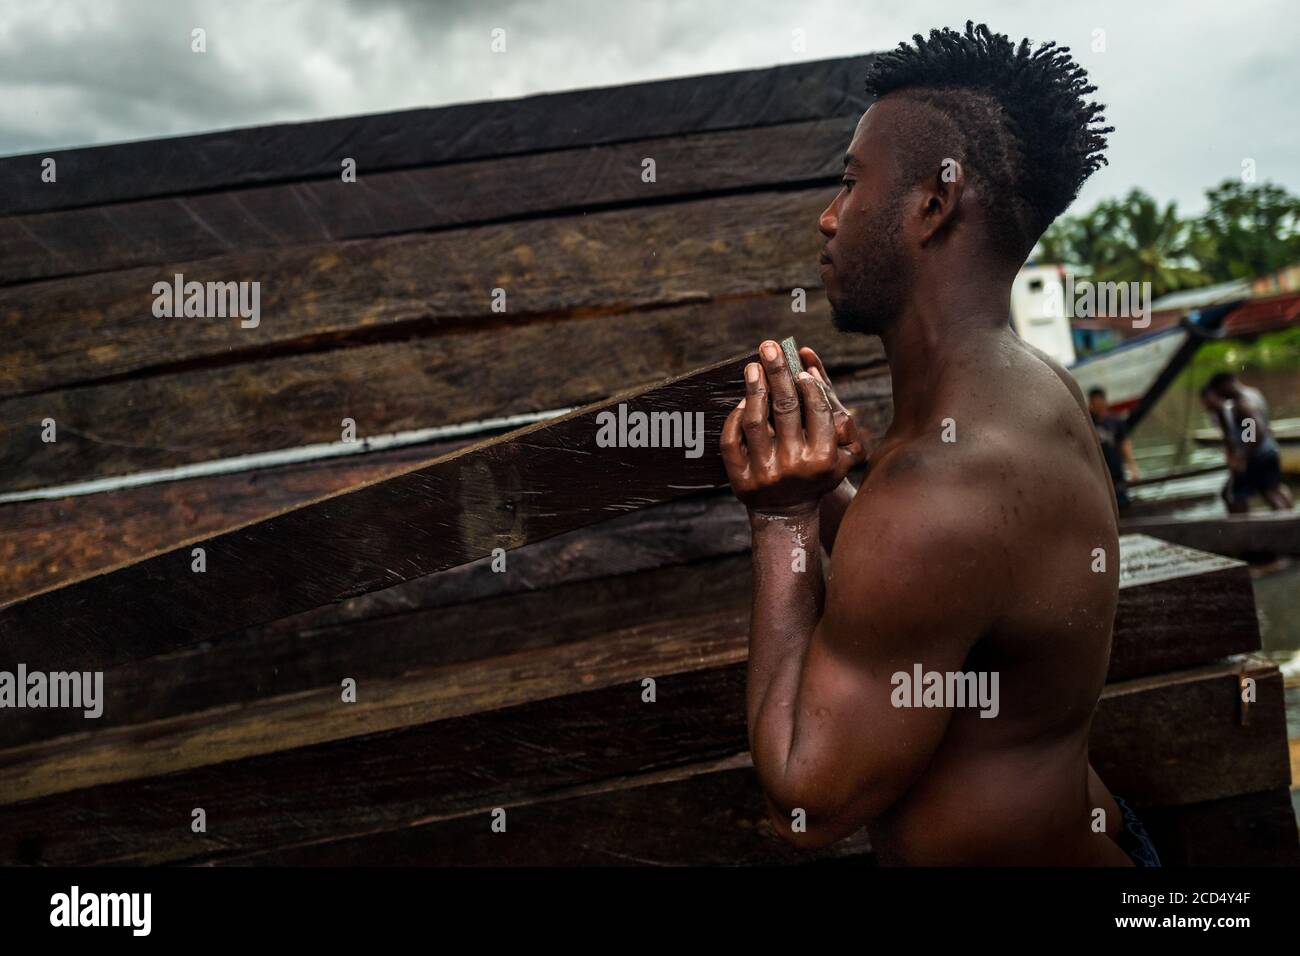 Ein afro-kolumbianischer Träger hebt ein grobes Schnittholz, das aus dem pazifischen Regenwald gewonnen wird, während des Holztransports im Hafen von Turbo, Kolumbien. Stockfoto